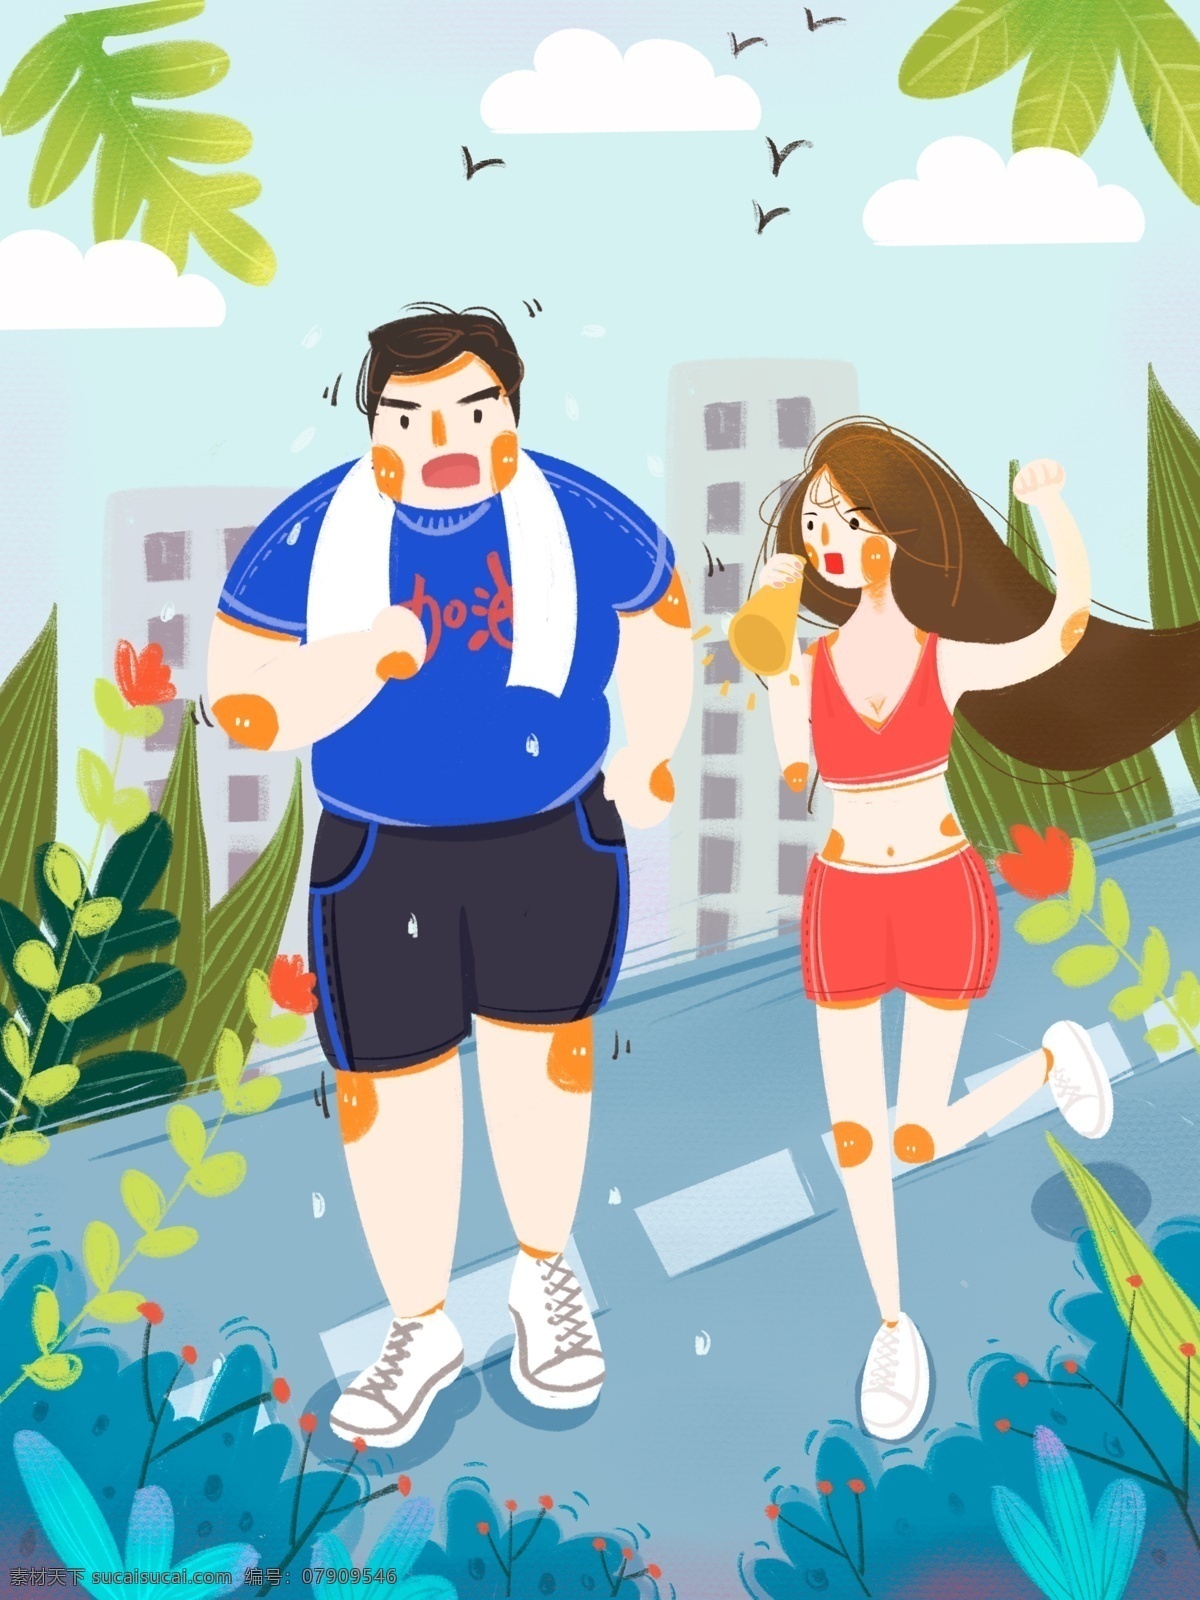 燃烧 卡路里 胖子 公园 跑步 女孩 加油 健身 插画 燃烧卡路里 手绘 扁平风 植物